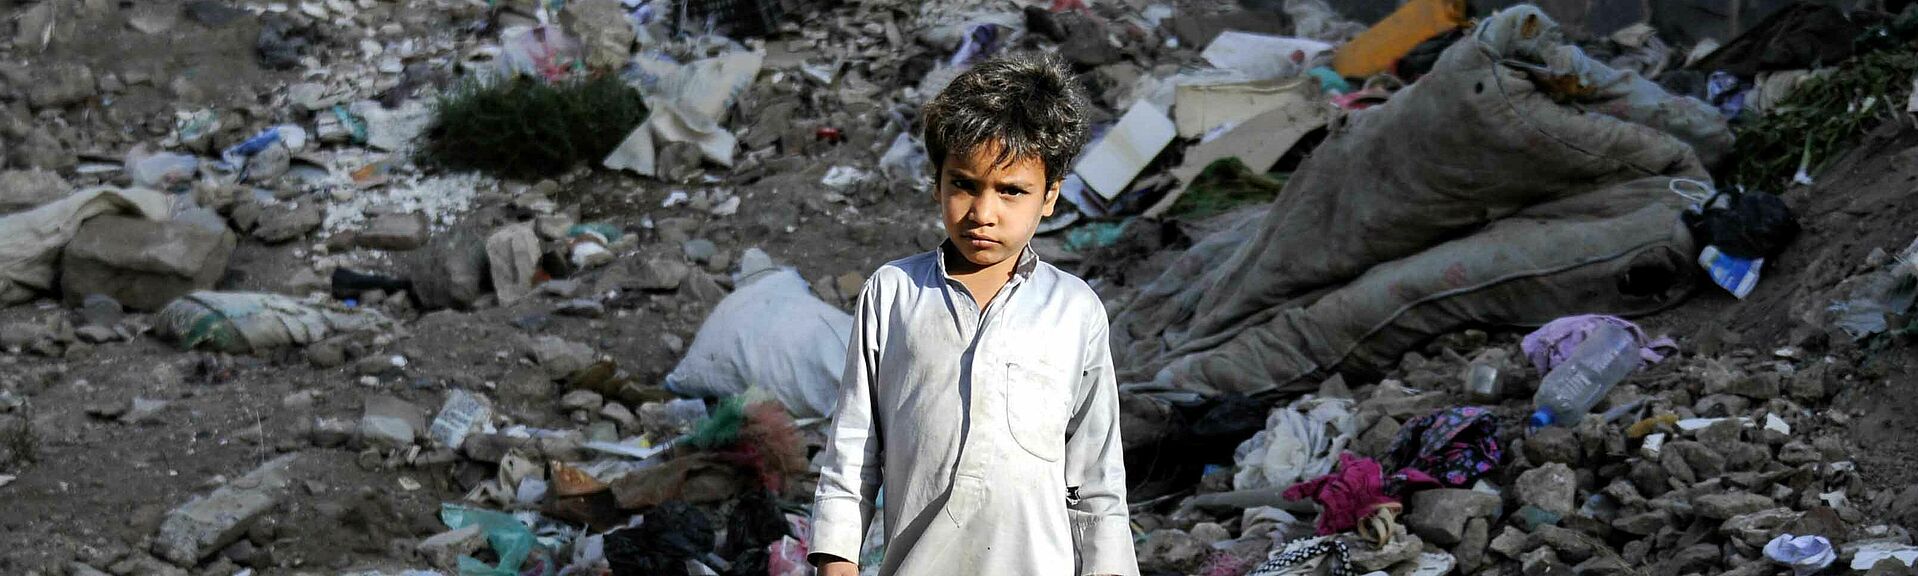 Kleiner Junge im Jemen